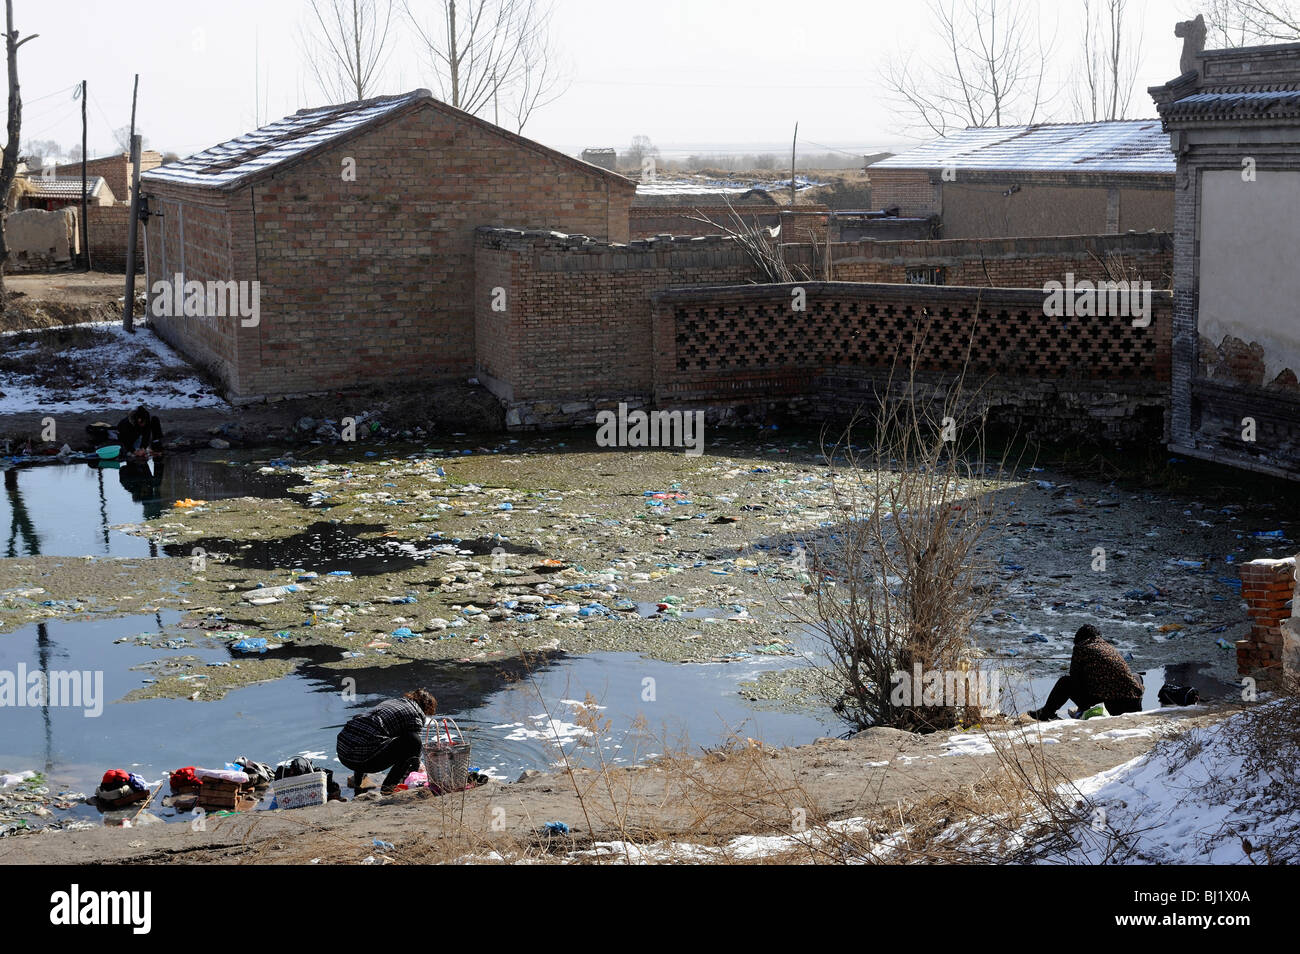 Les femmes laver les vêtements à la pollution de l'étang dans un village de la province de Hebei, Chine. 02-Mar-2010 Banque D'Images